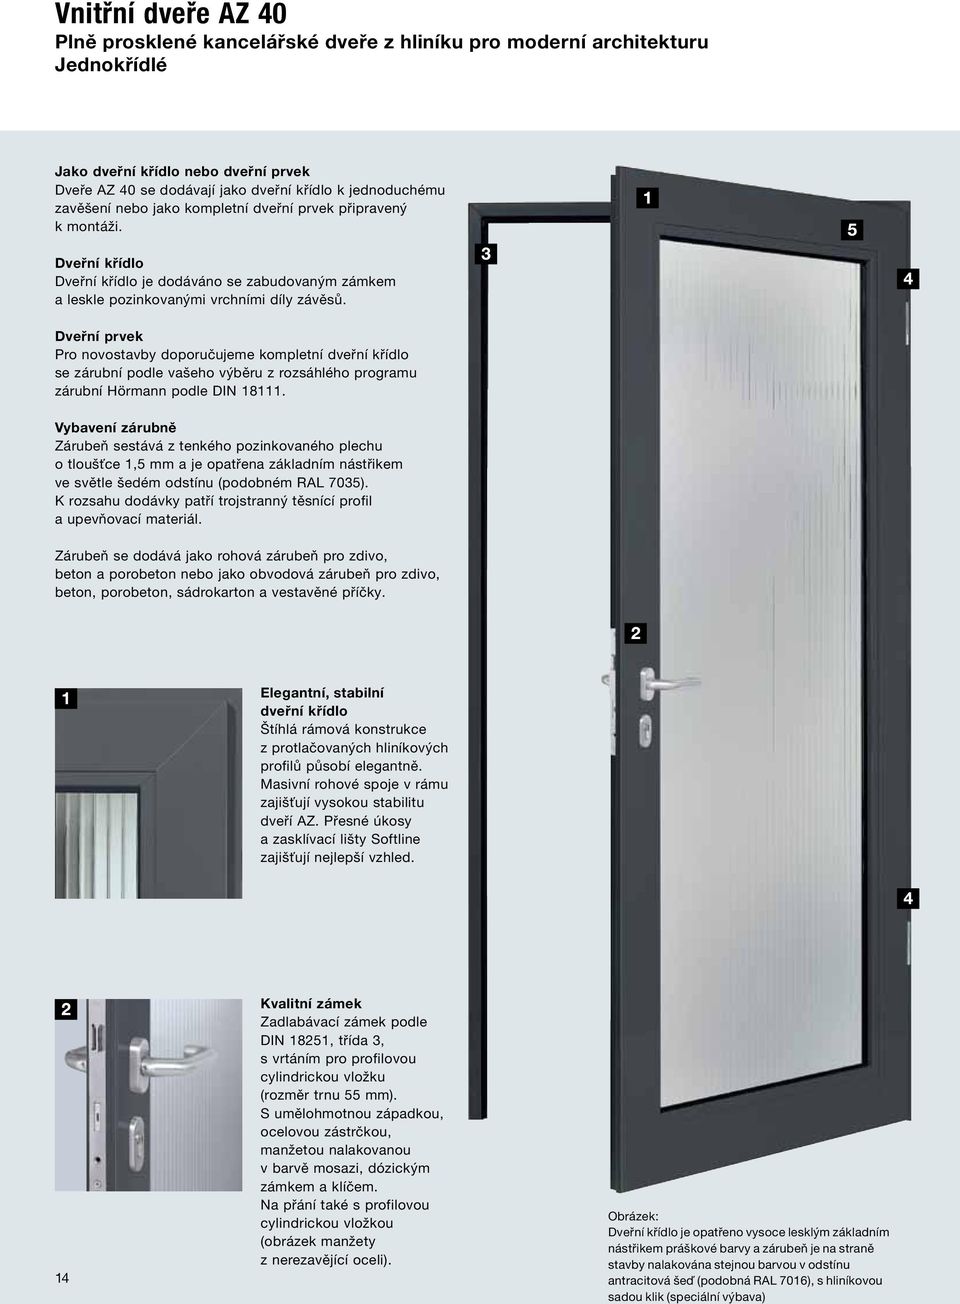 Dveřní prvek Pro novostavby doporučujeme kompletní dveřní křídlo se zárubní podle vašeho výběru z rozsáhlého programu zárubní Hörmann podle DIN 18111.